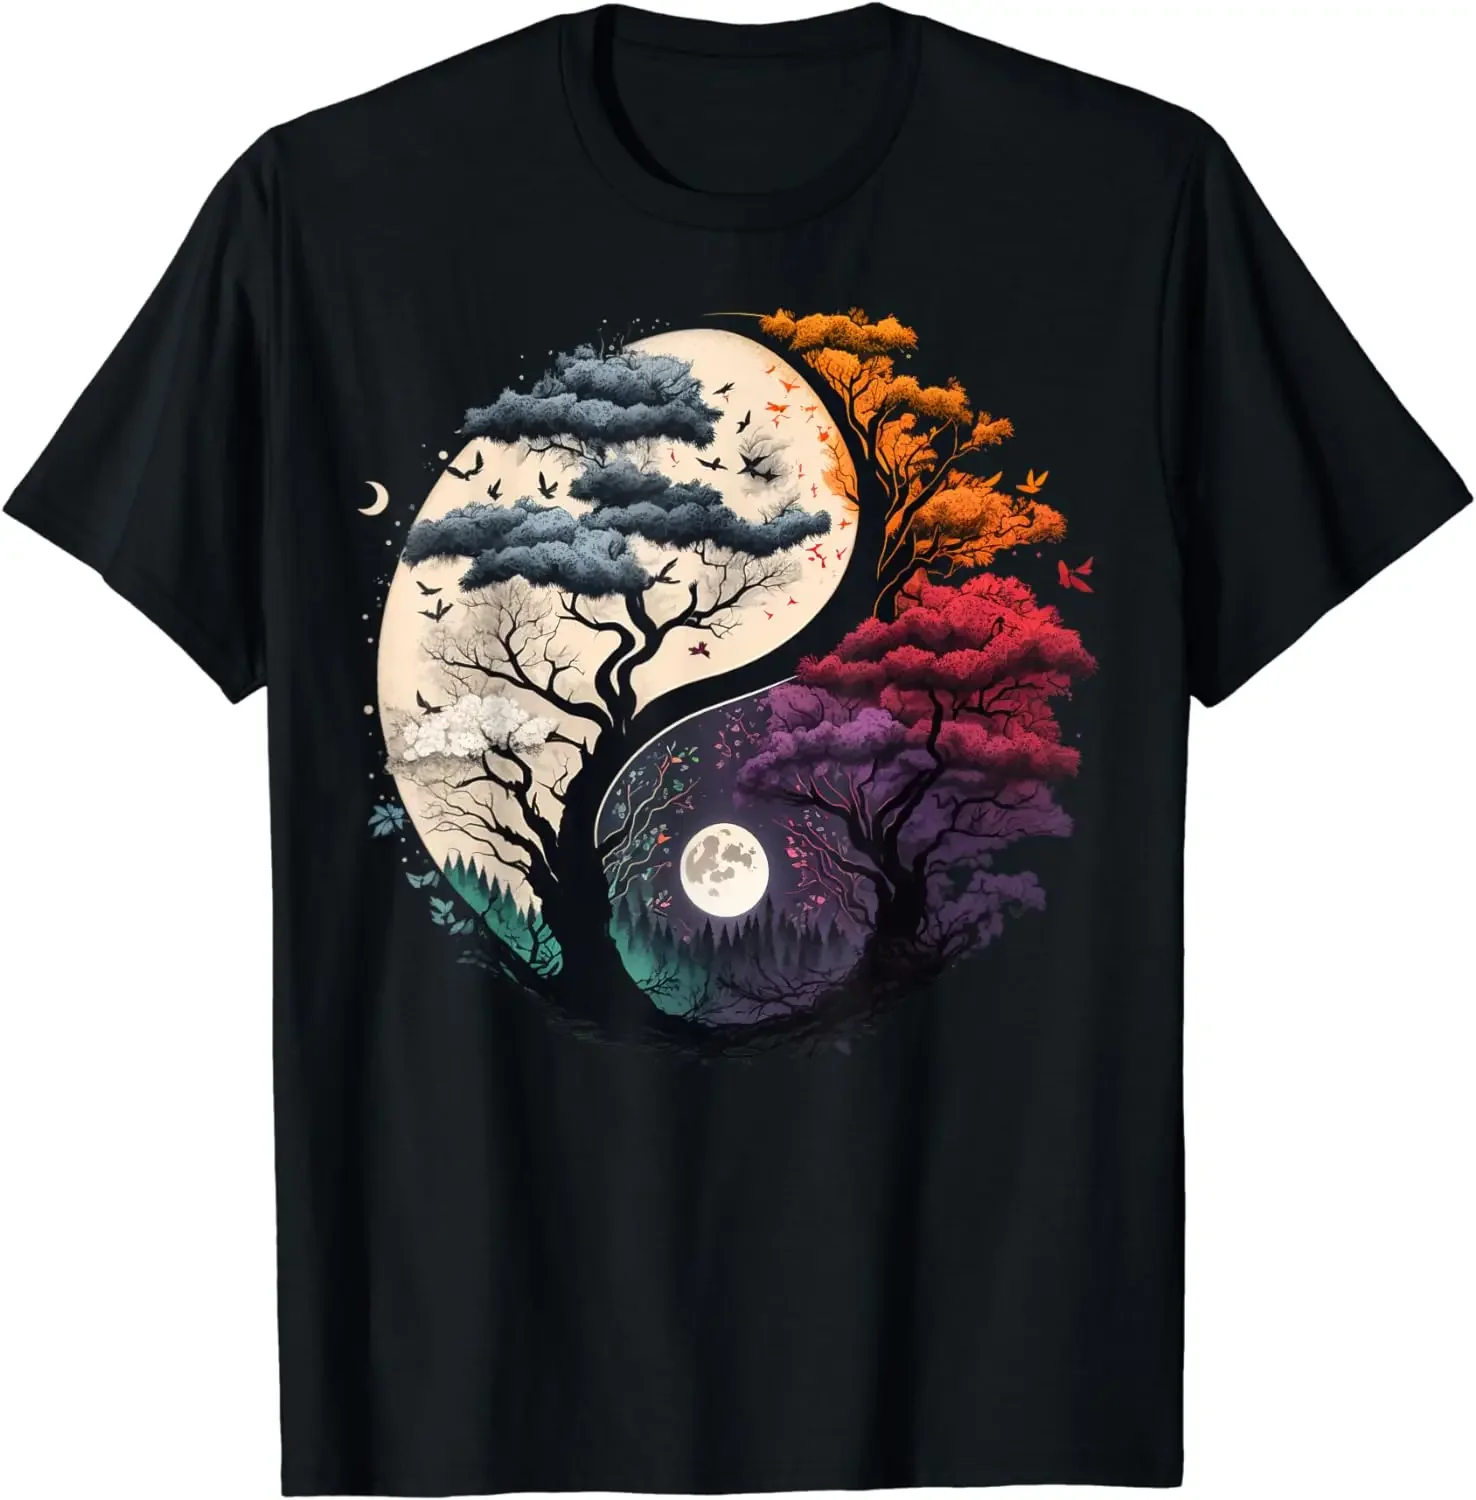 

Футболка с изображением дерева жизни Инь Ян китайская футболка Инь-Янь тайчи гармоничная одежда рубашки для женщин футболки с рисунком Топы